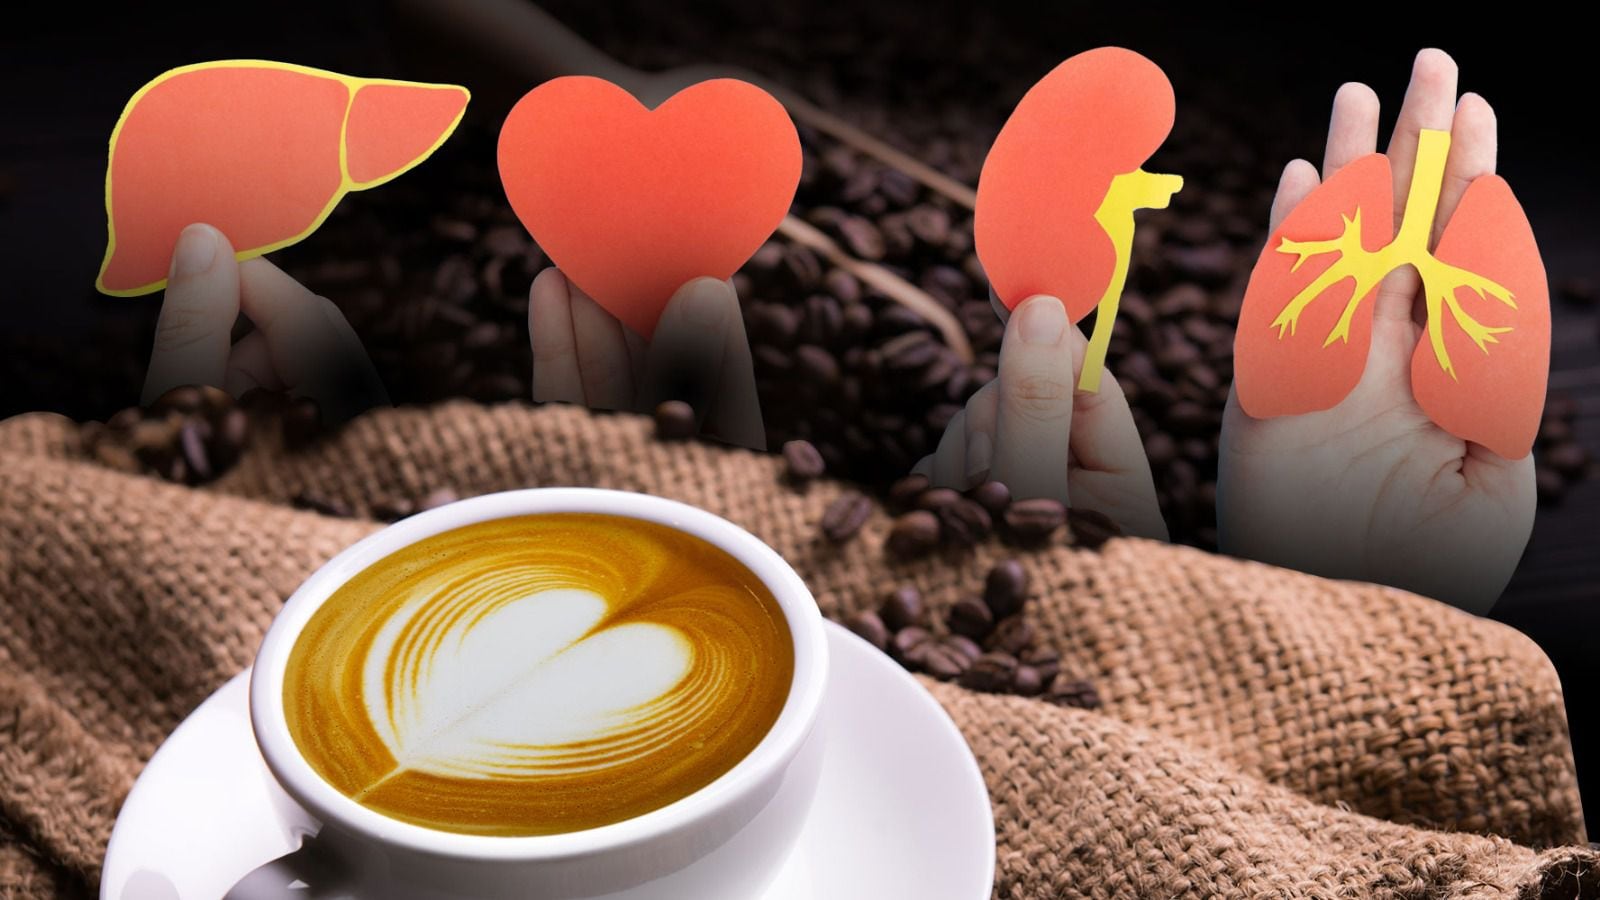 El consumo de café influye en varias partes del cuerpo como hígado, corazón, riñones e hígado. (Fotoarte: Andrea López Trejo | El Financiero).